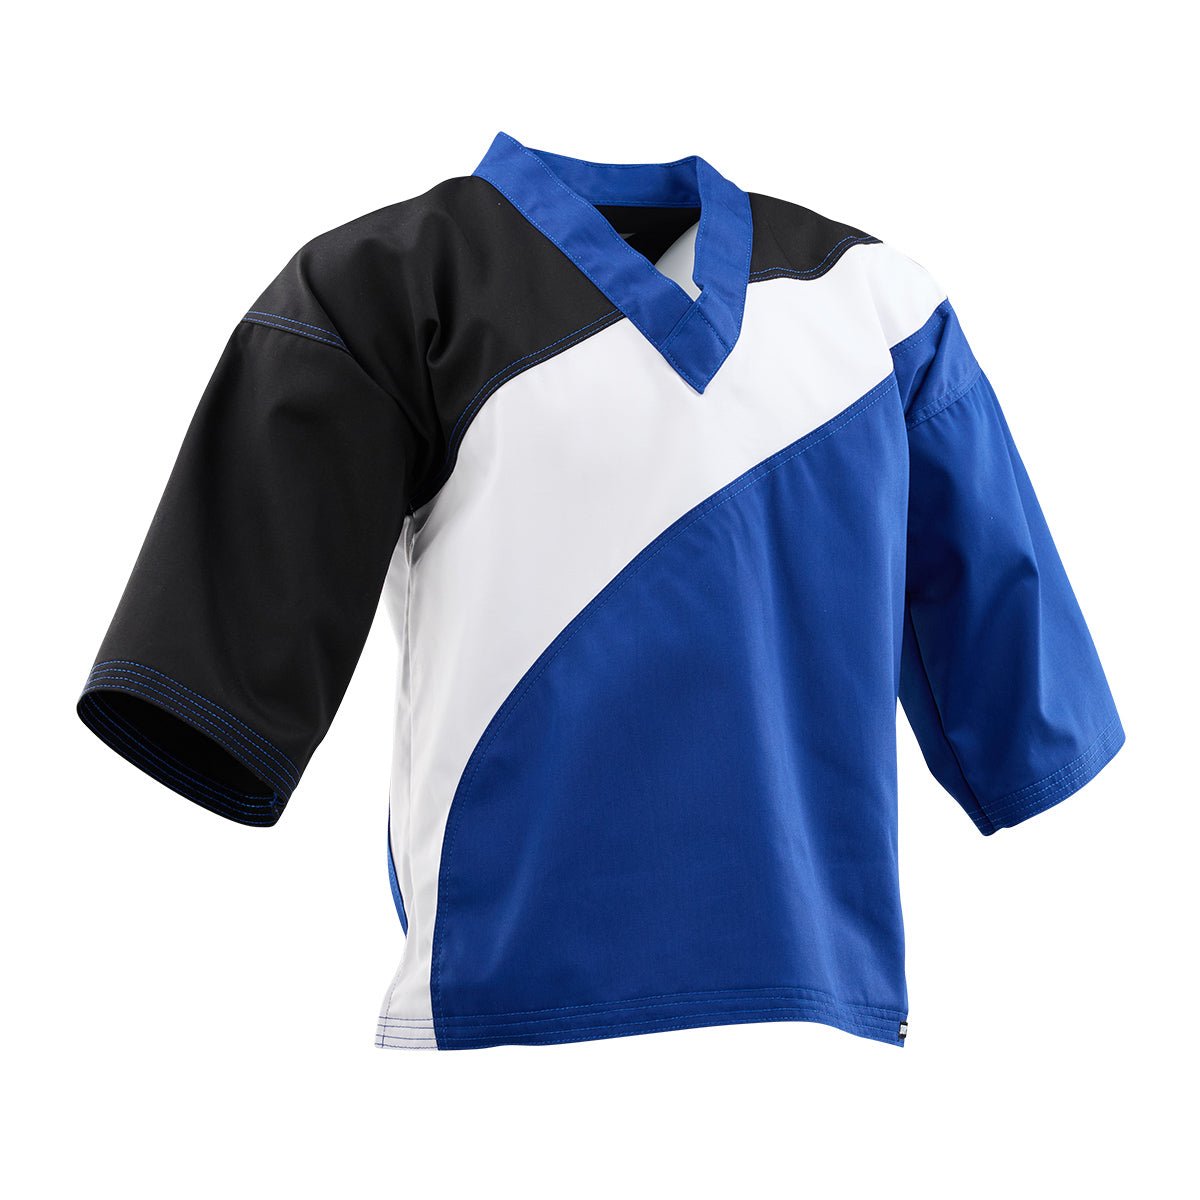 Tri-Color Diagonal Program Uniform Top Black Blue White